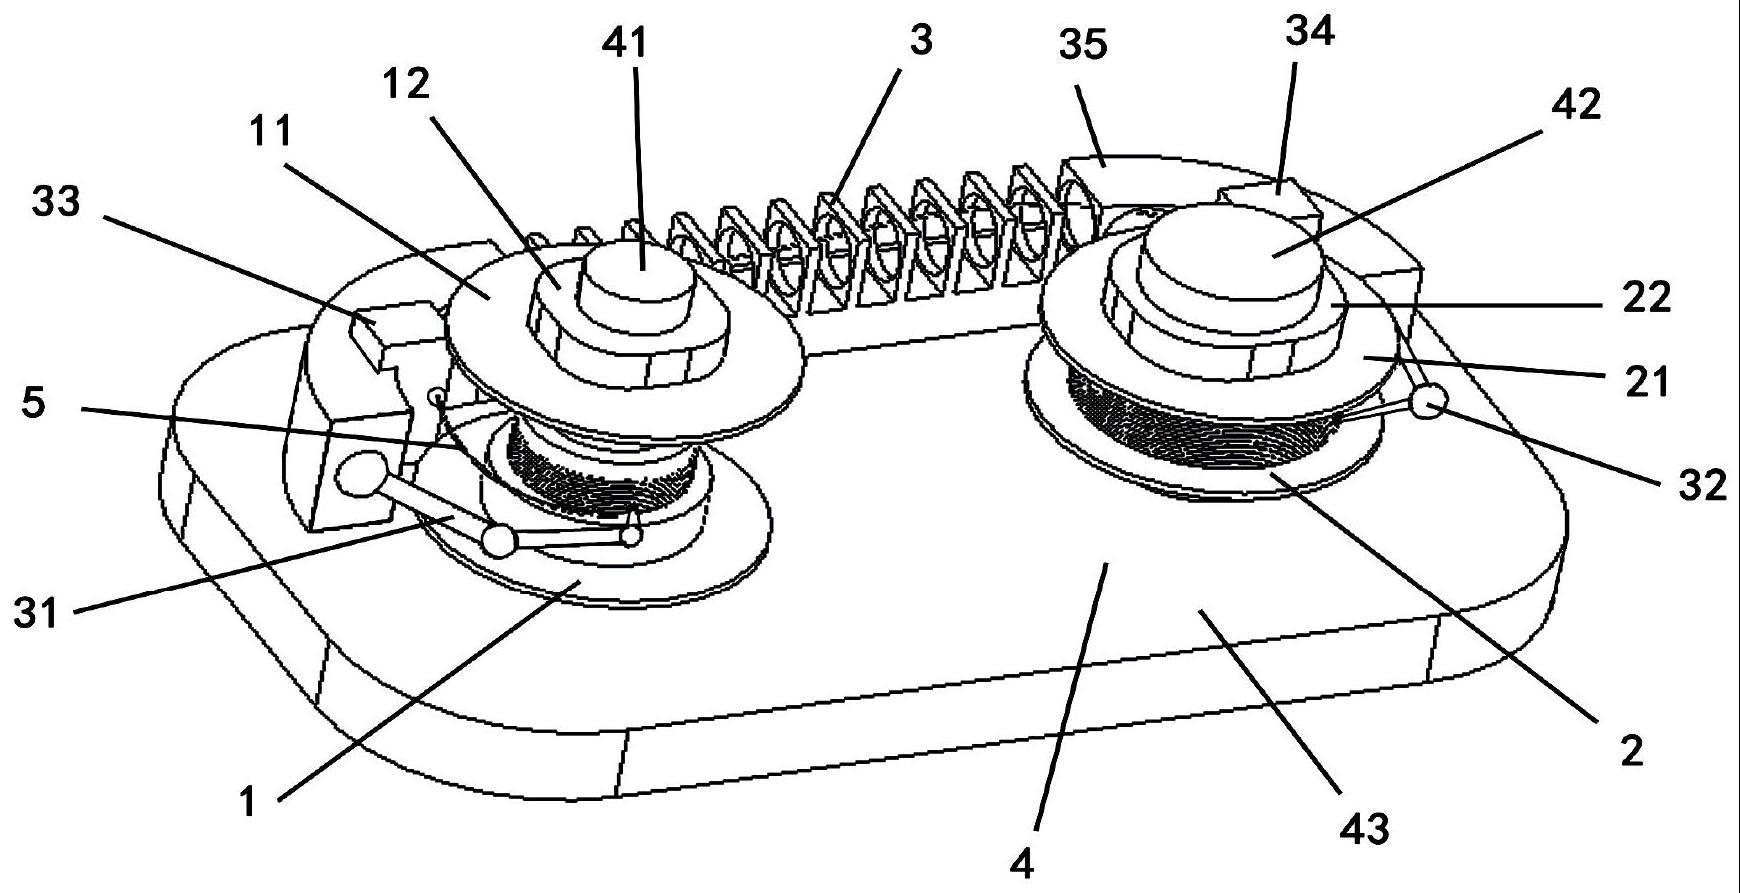 光纤弯曲盘绕选模装置、盘绕方法和包含其的光纤激光器与流程